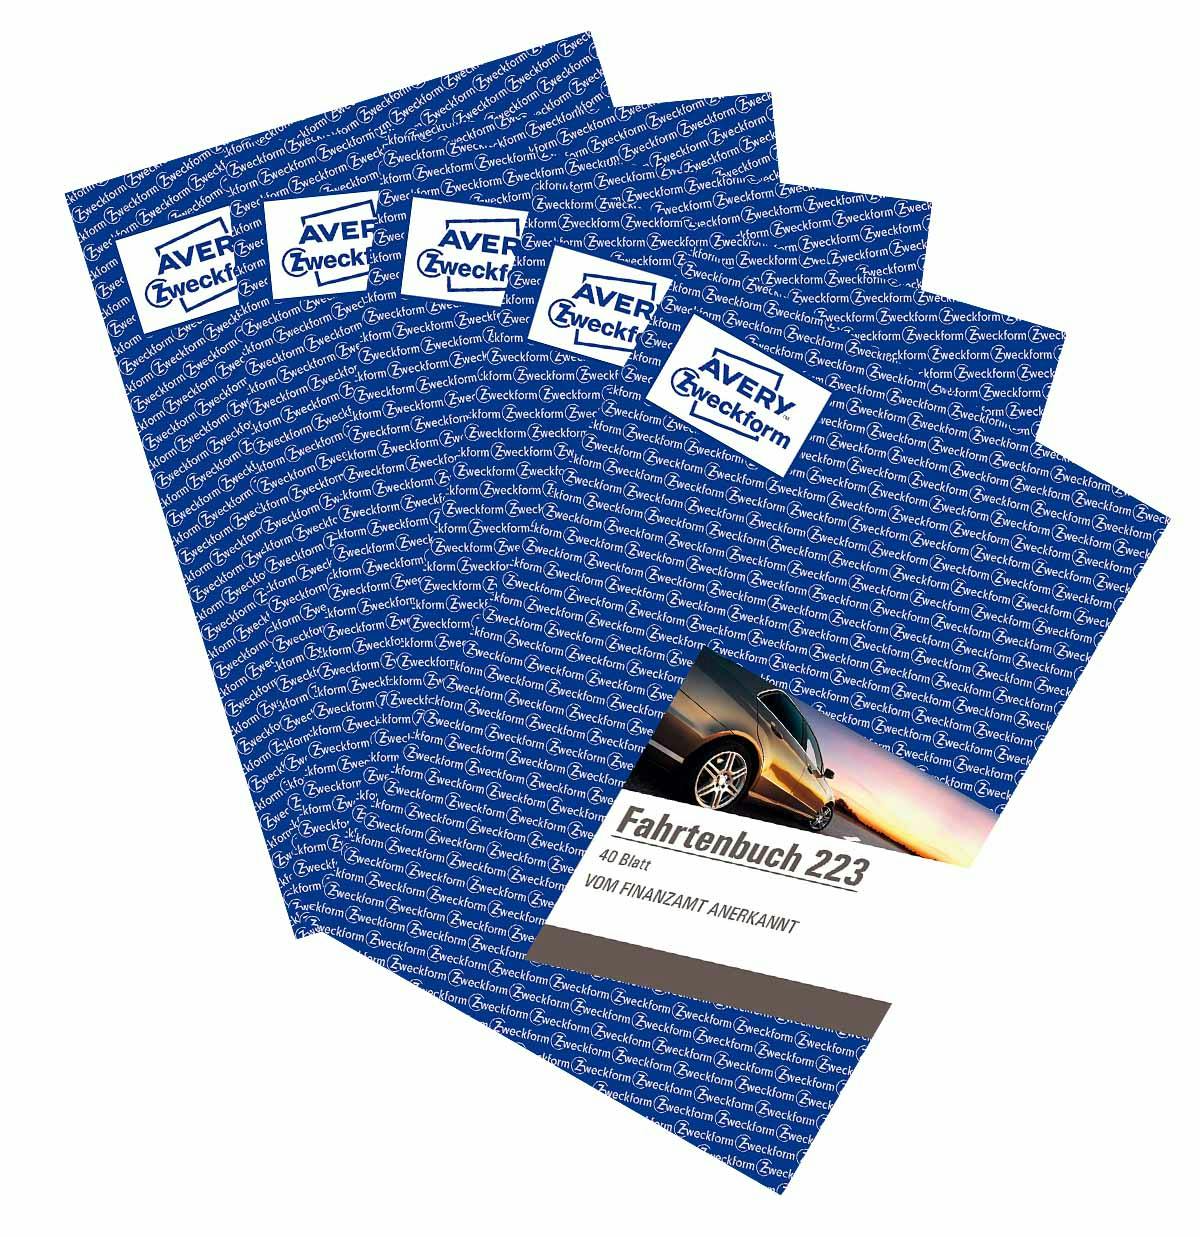 AVERY Zweckform 223 Fahrtenbuch für PKW 5er-Pack vom Finanzamt